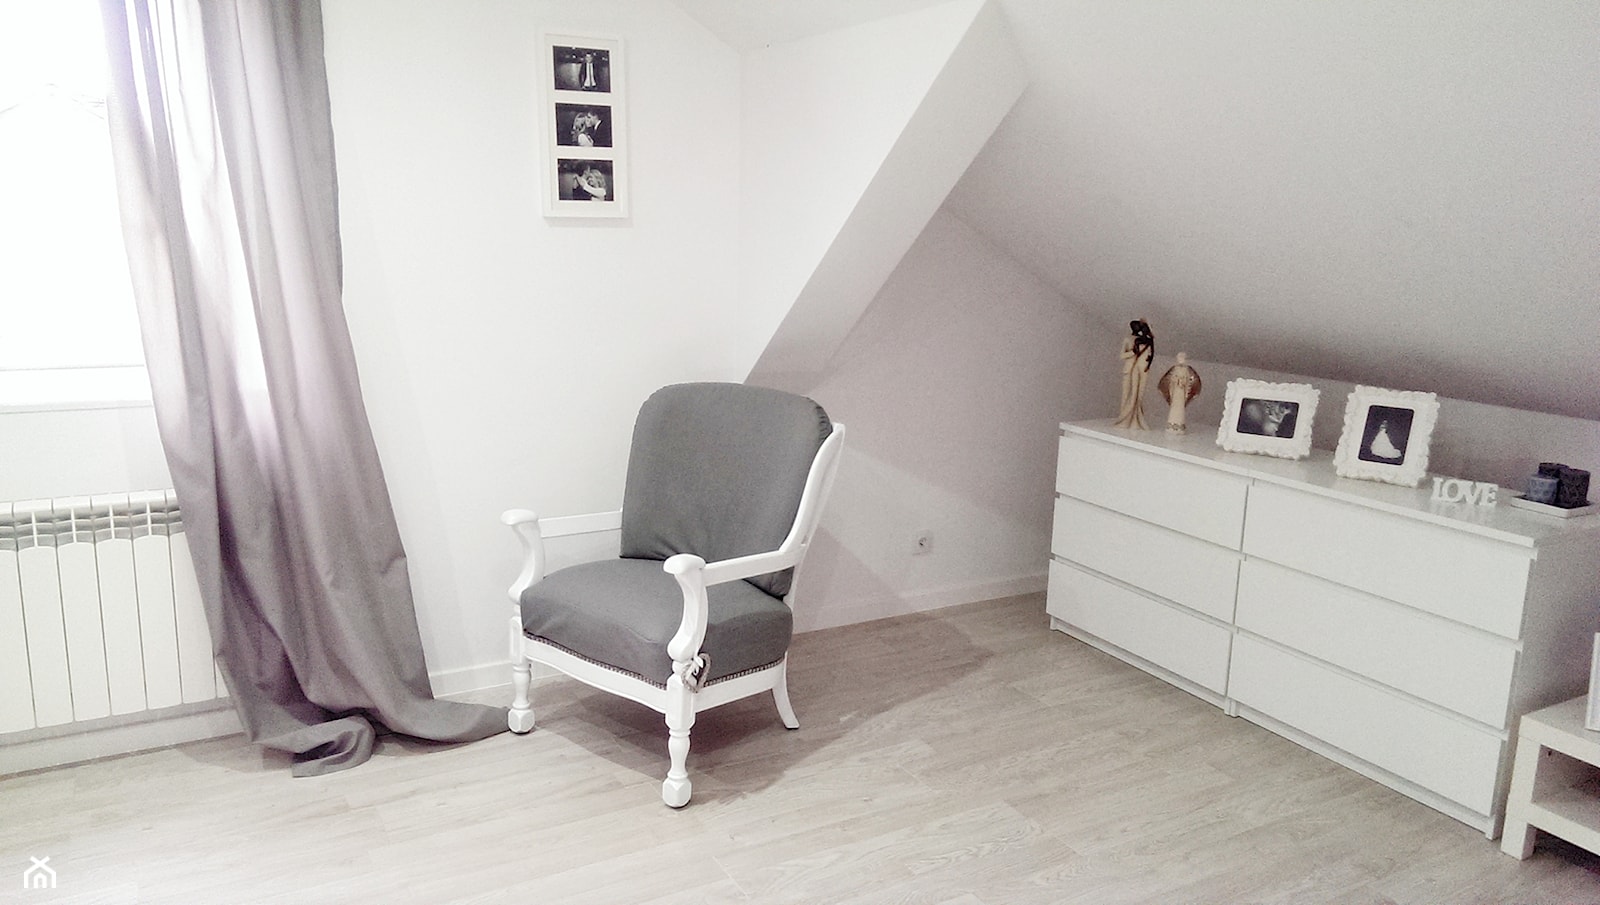 Mieszkanie na poddaszu - Duża biała sypialnia na poddaszu, styl glamour - zdjęcie od marcelina89 - Homebook